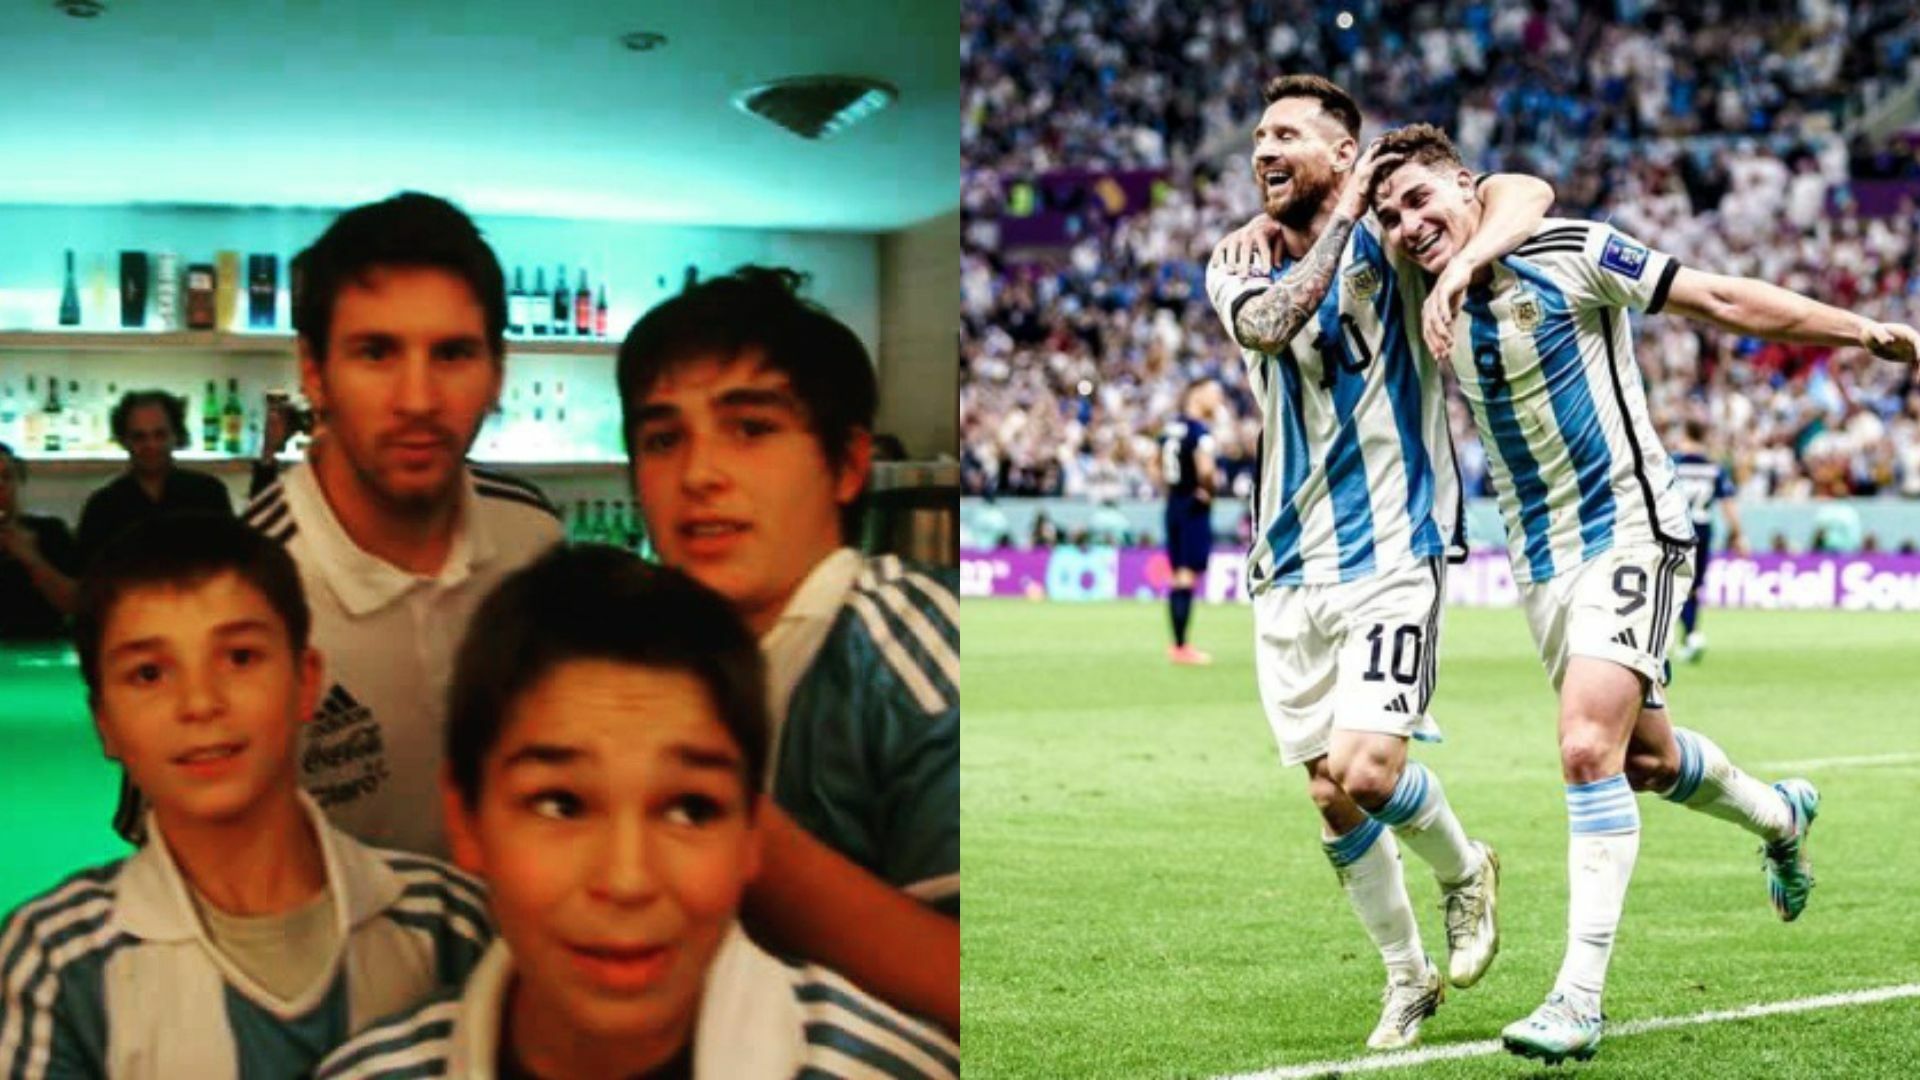 Julián Álvarez pasó de pedirle una foto a su ídolo Messi, a jugar un Mundial junto a él